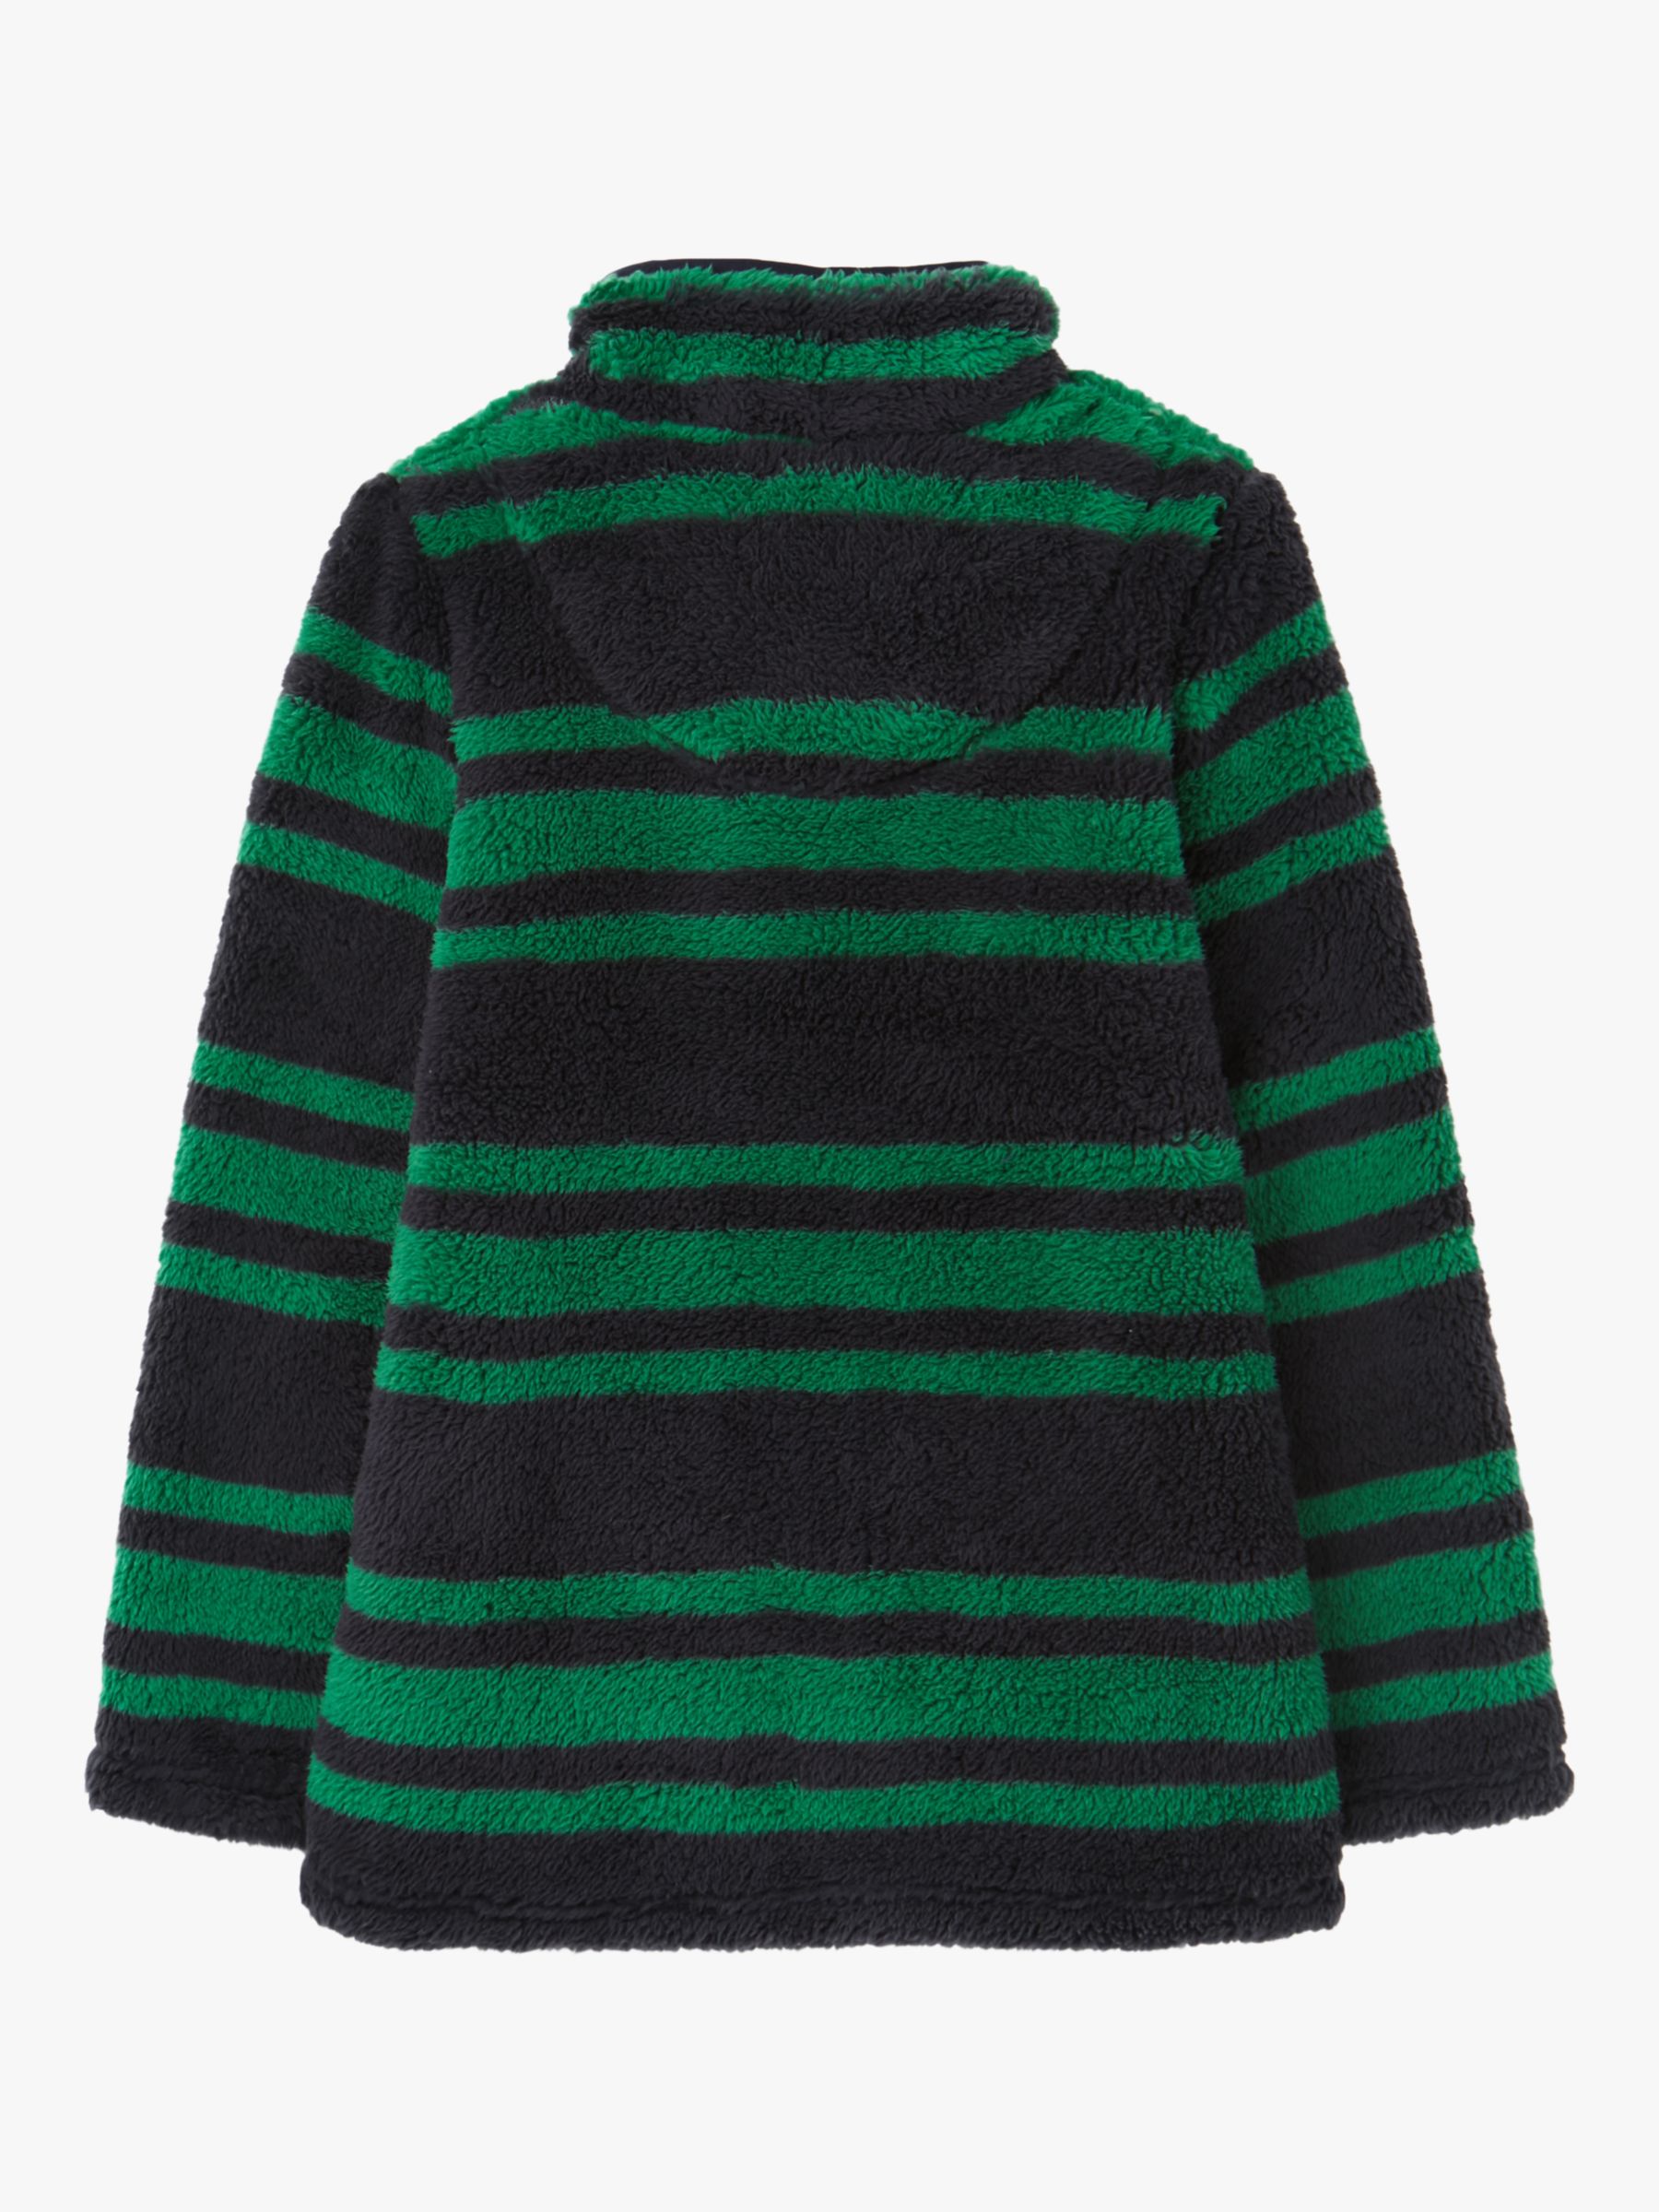 Little Joule Kids' Woozle Half Zip Striped Fleece Jumper, Green/Black